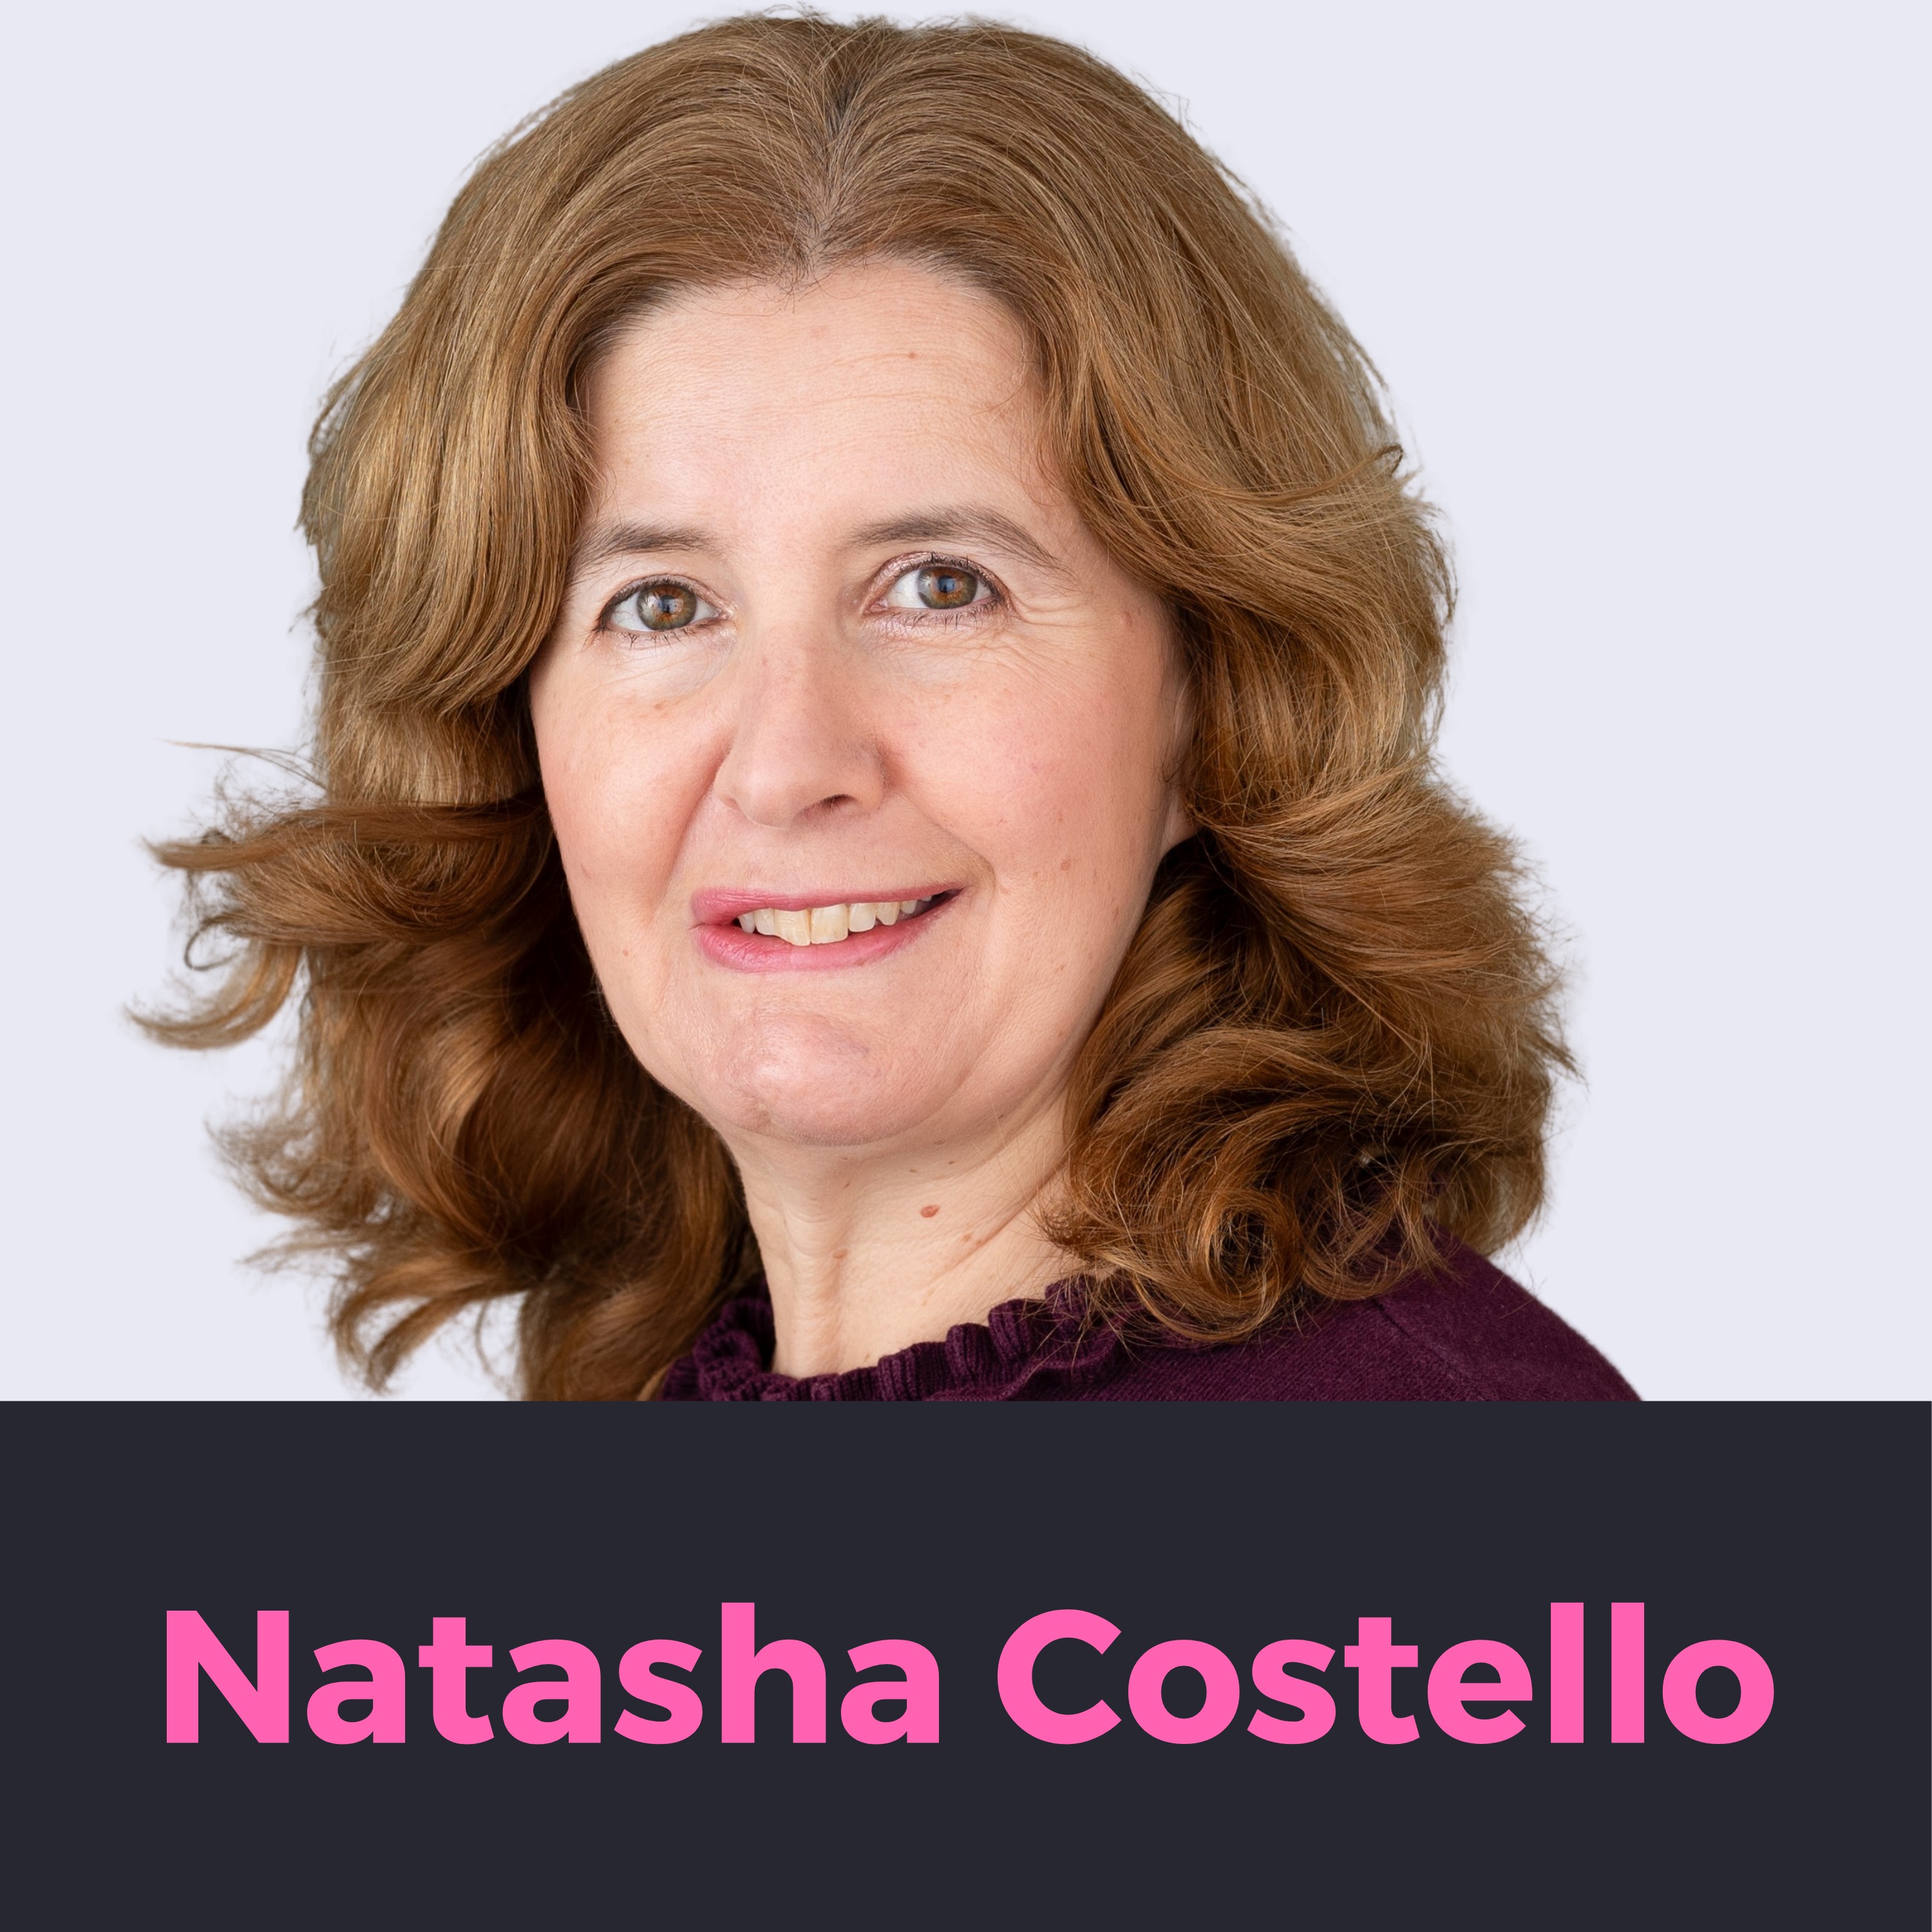 Teaching Legal English with Natasha Costello